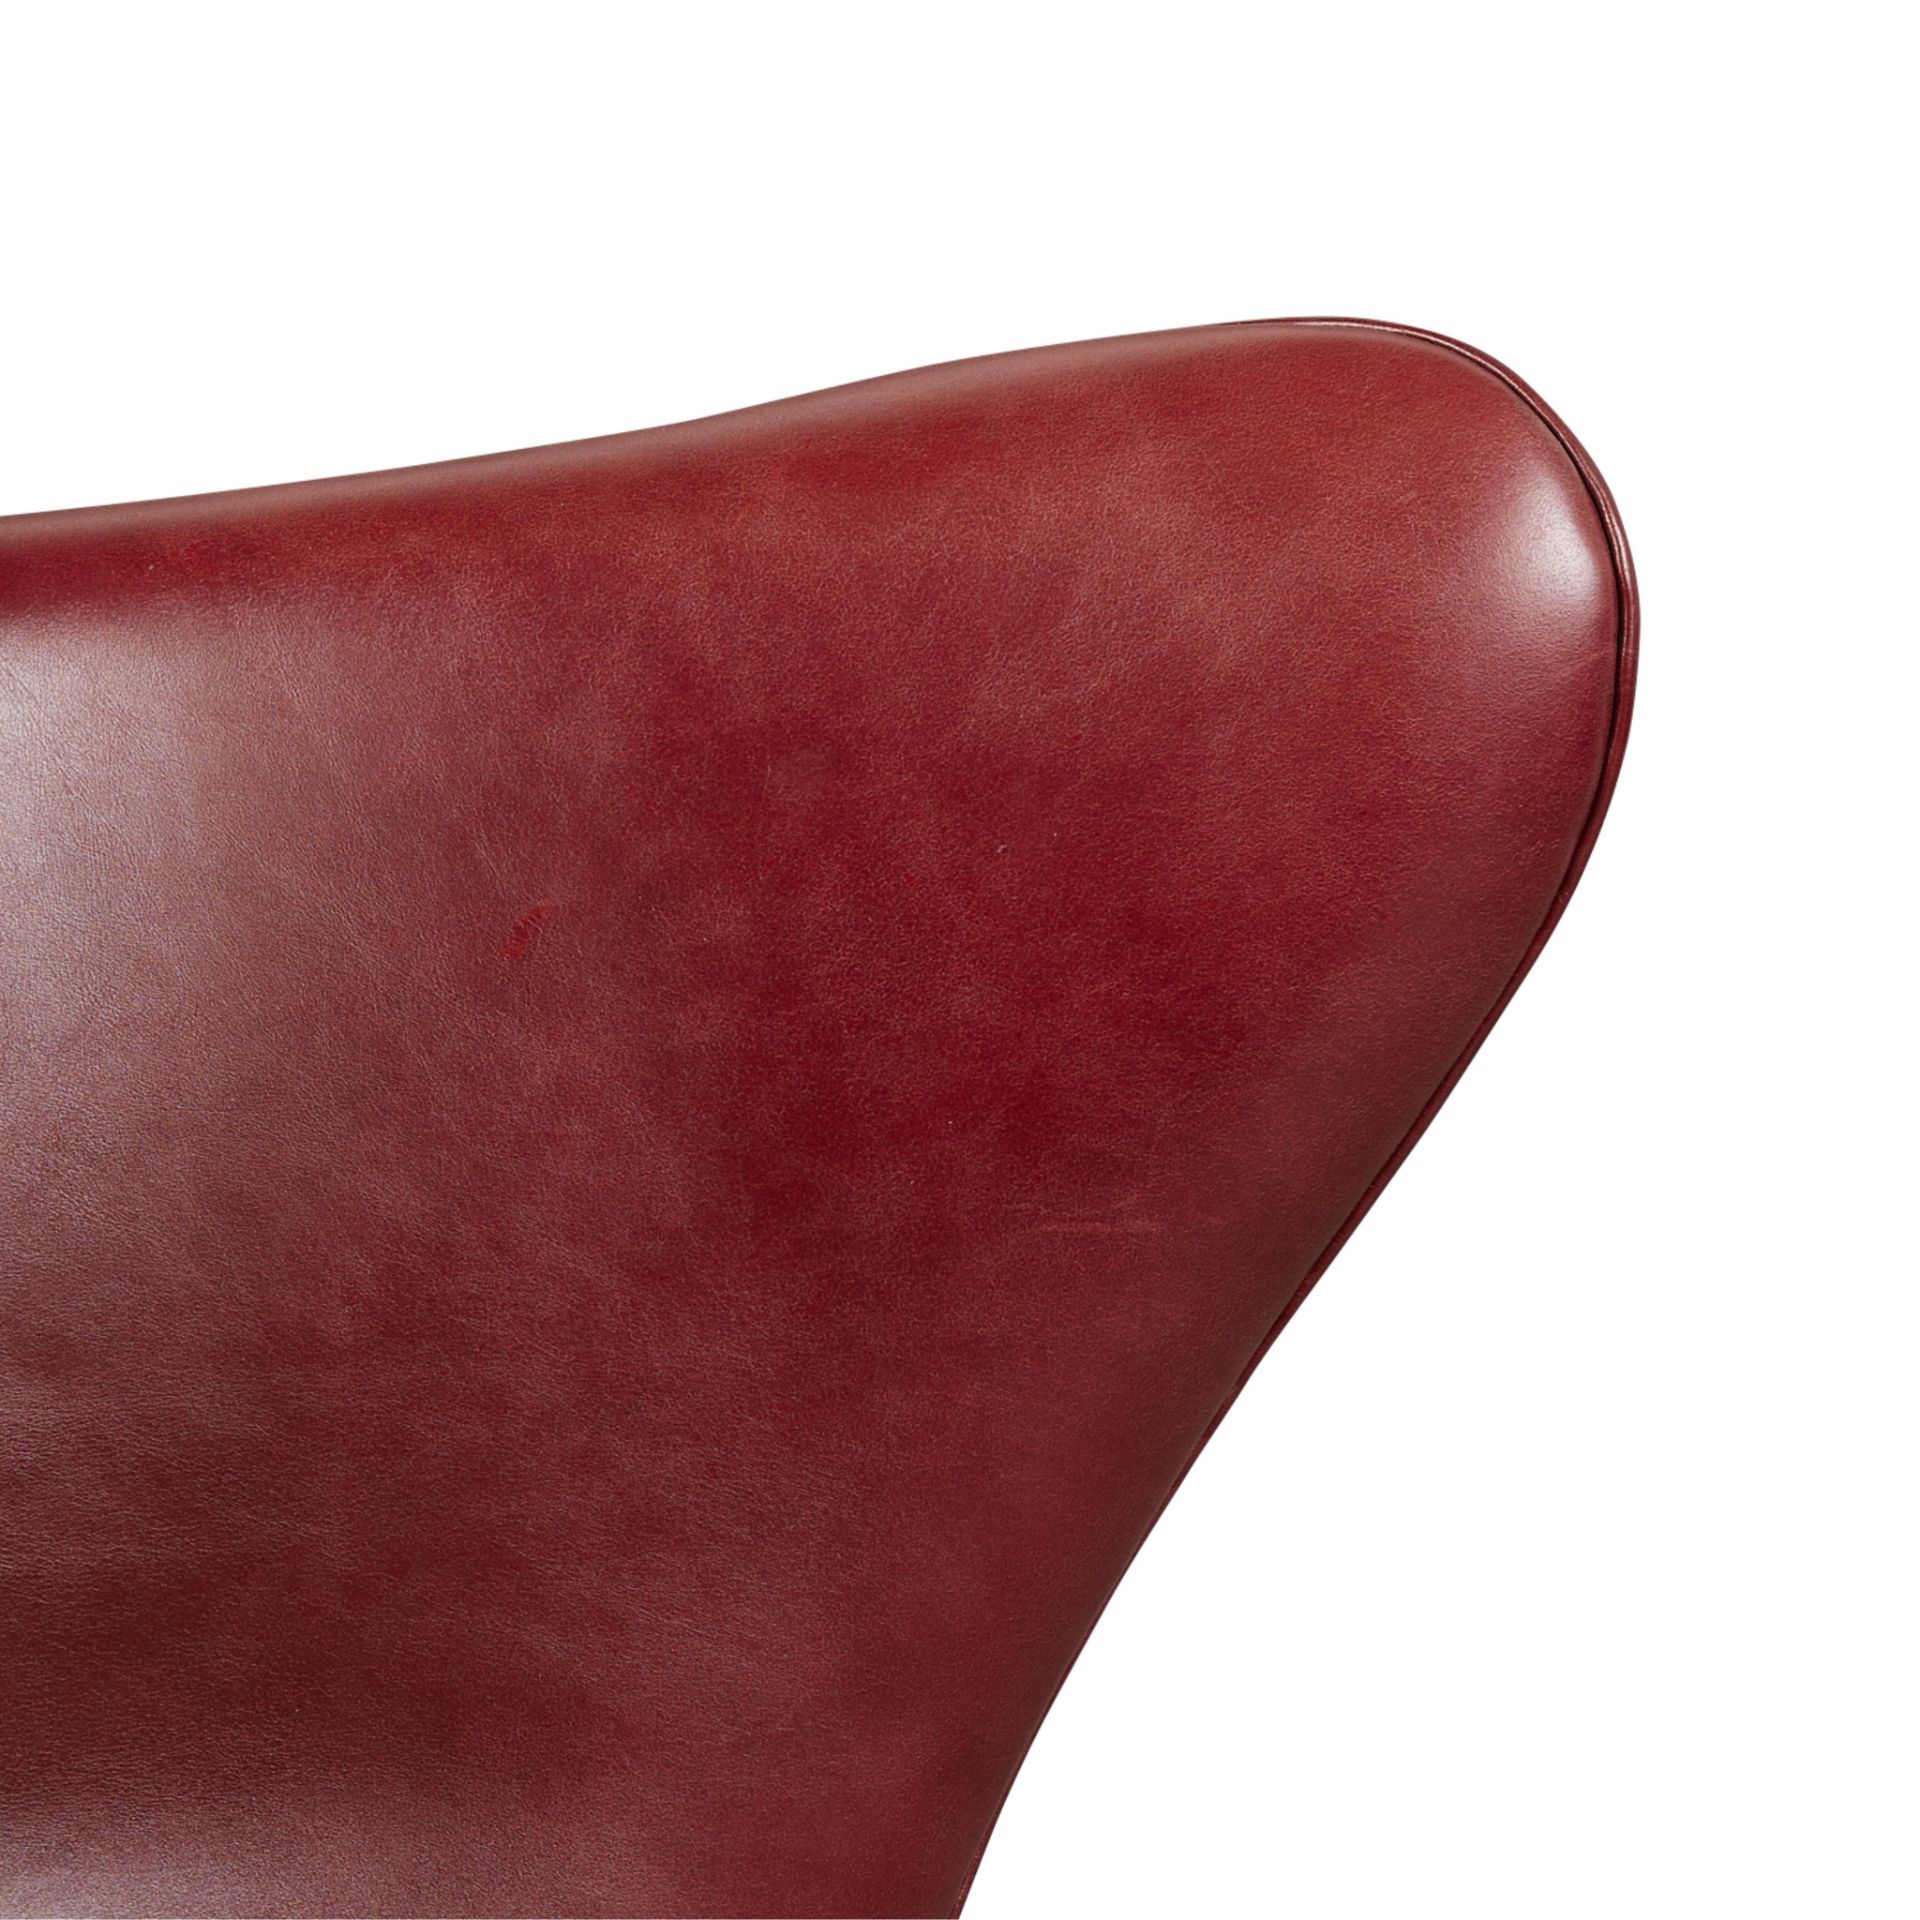 Arne Jacobsen for Hansen Leather Egg Chair 1964 - Bild 13 aus 17